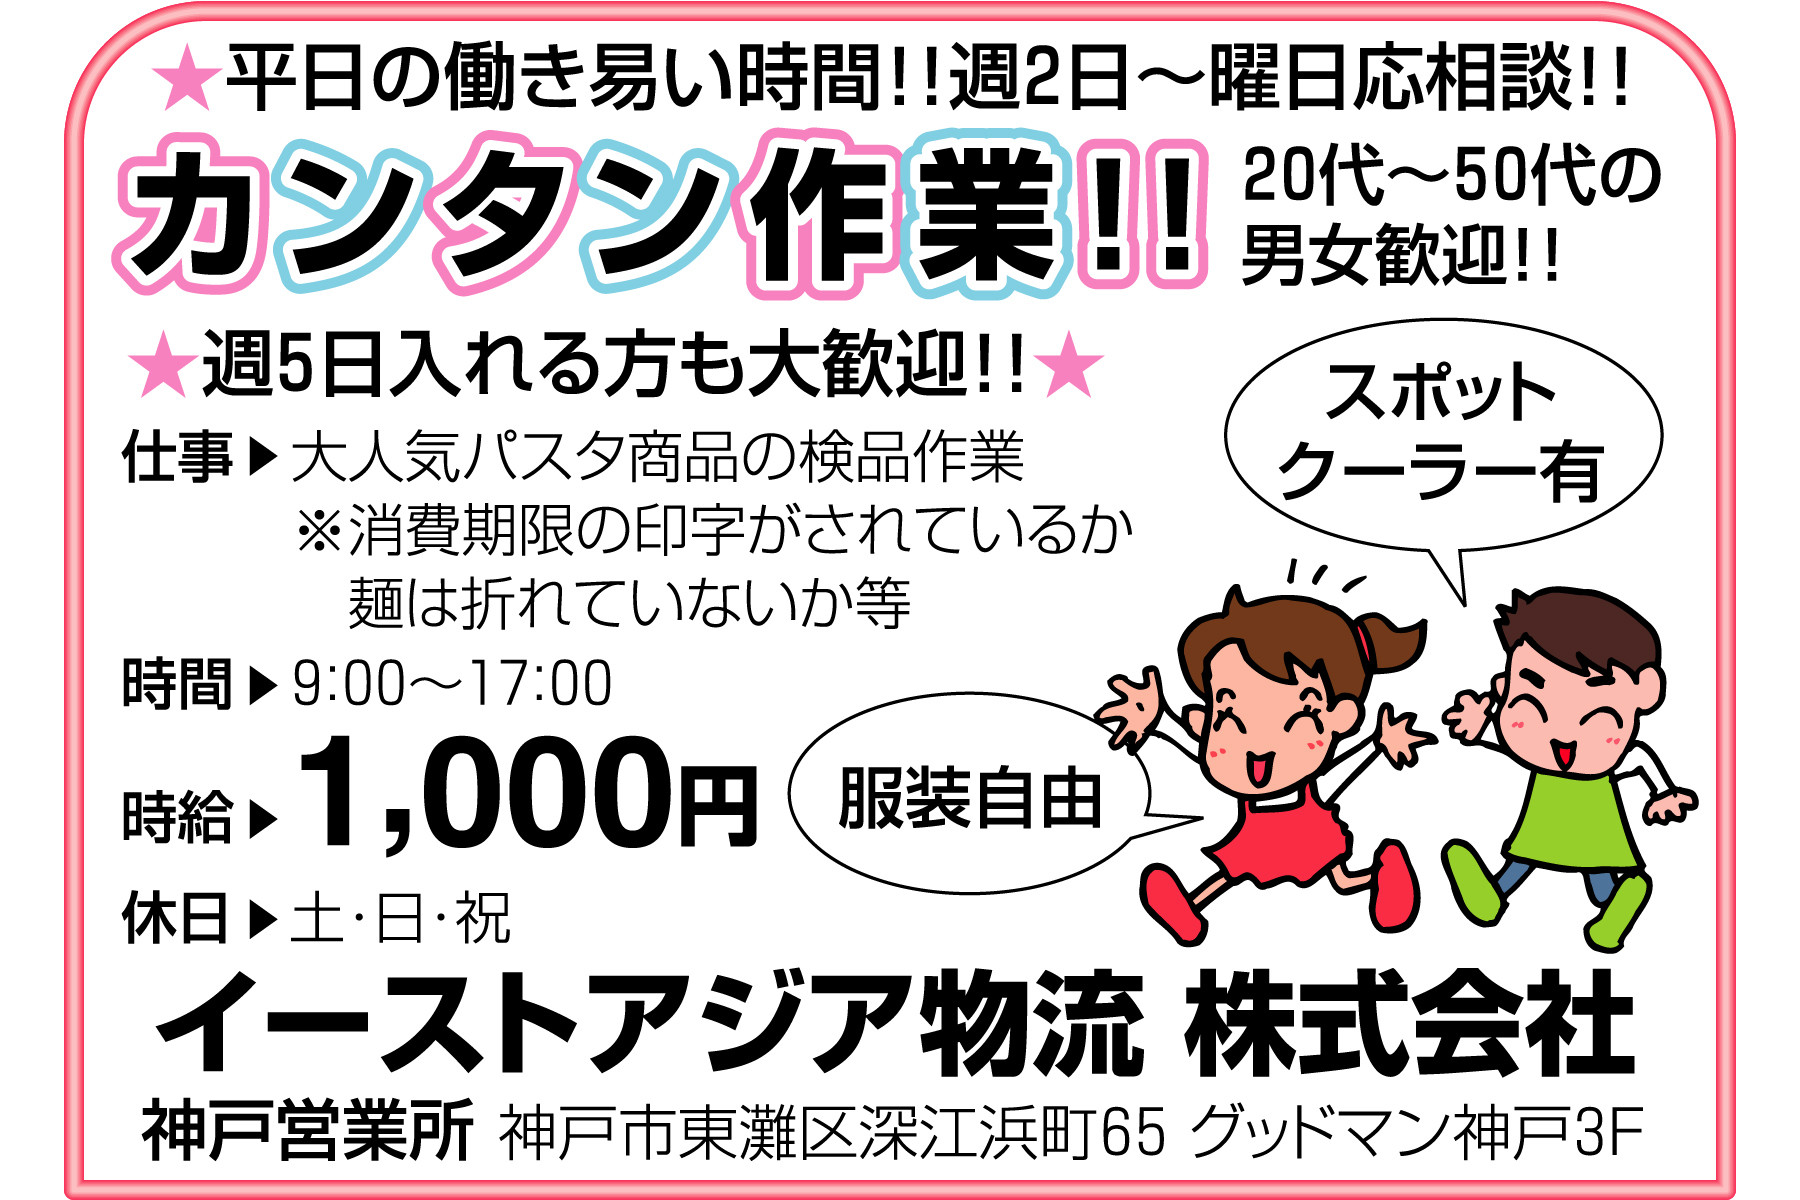 神戸市東灘区 簡単作業 パート アルバイト 週2日 Ok 求人のふぁいと 西宮を中心とした阪神エリアに特化した求人サービスを実施しております